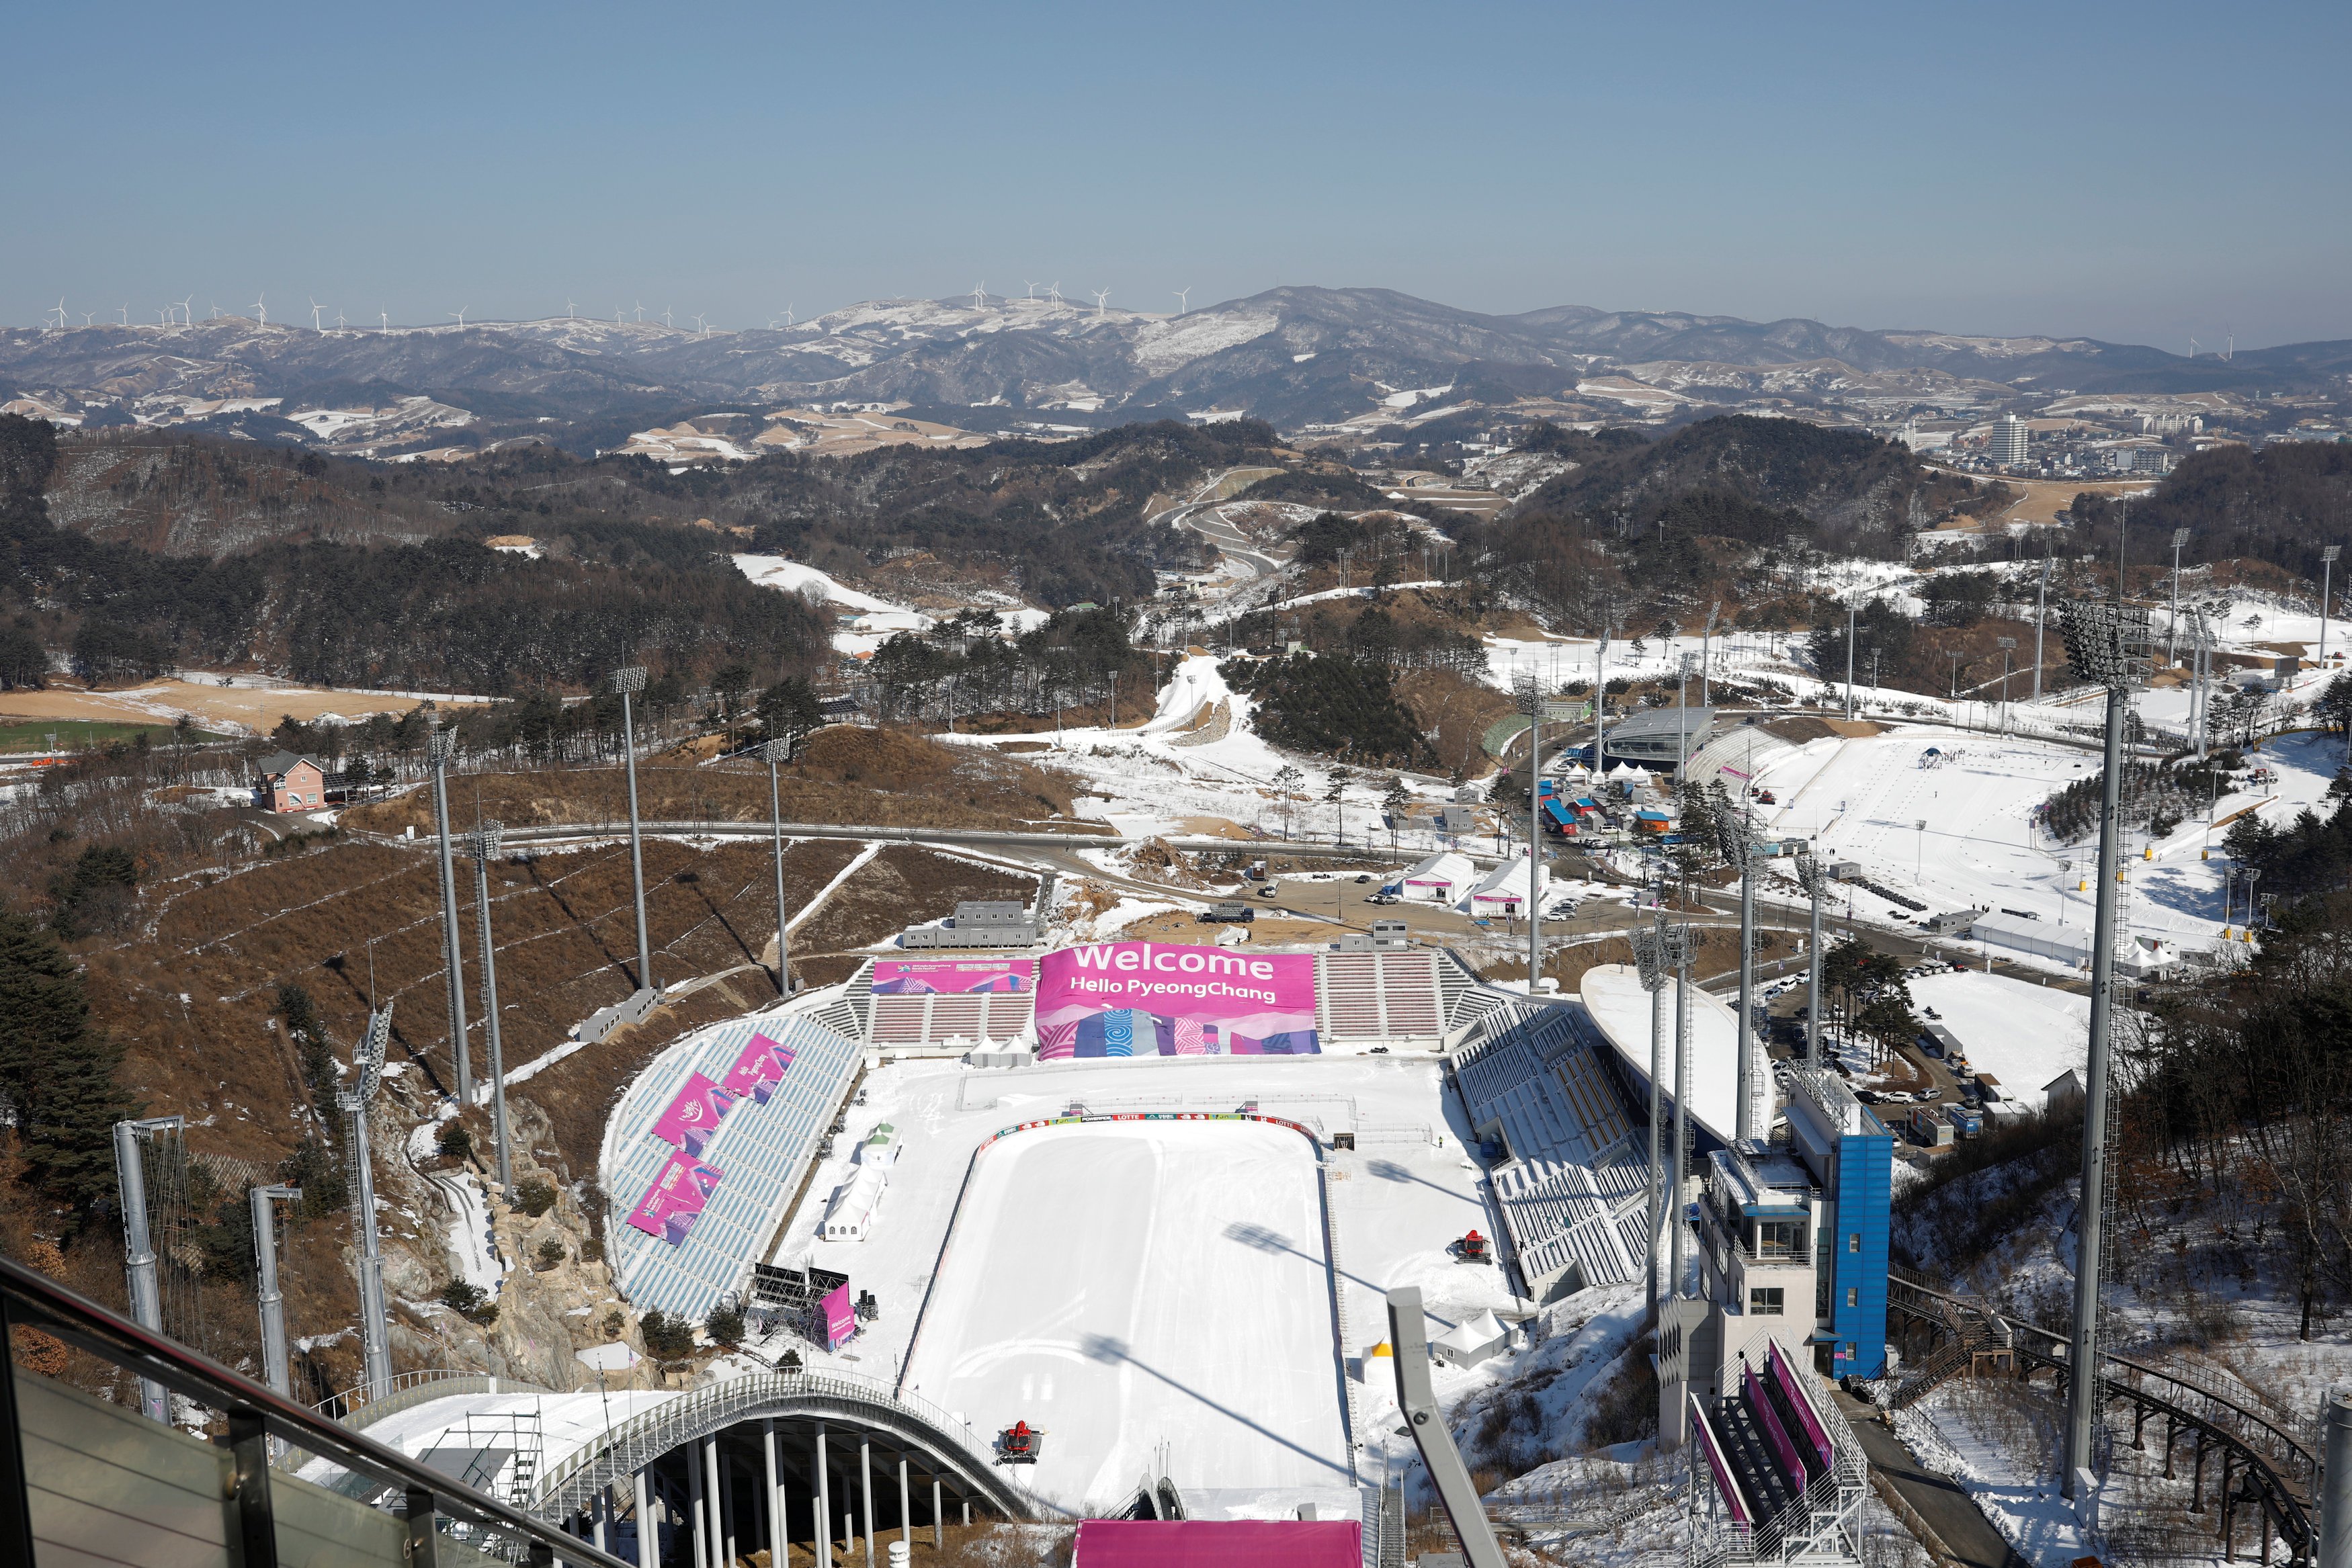 ساحات للتزلج على الجليد استعدادًا لدورة الألعاب الأولمبية الشتوية 2018 بكوريا الجنوبية